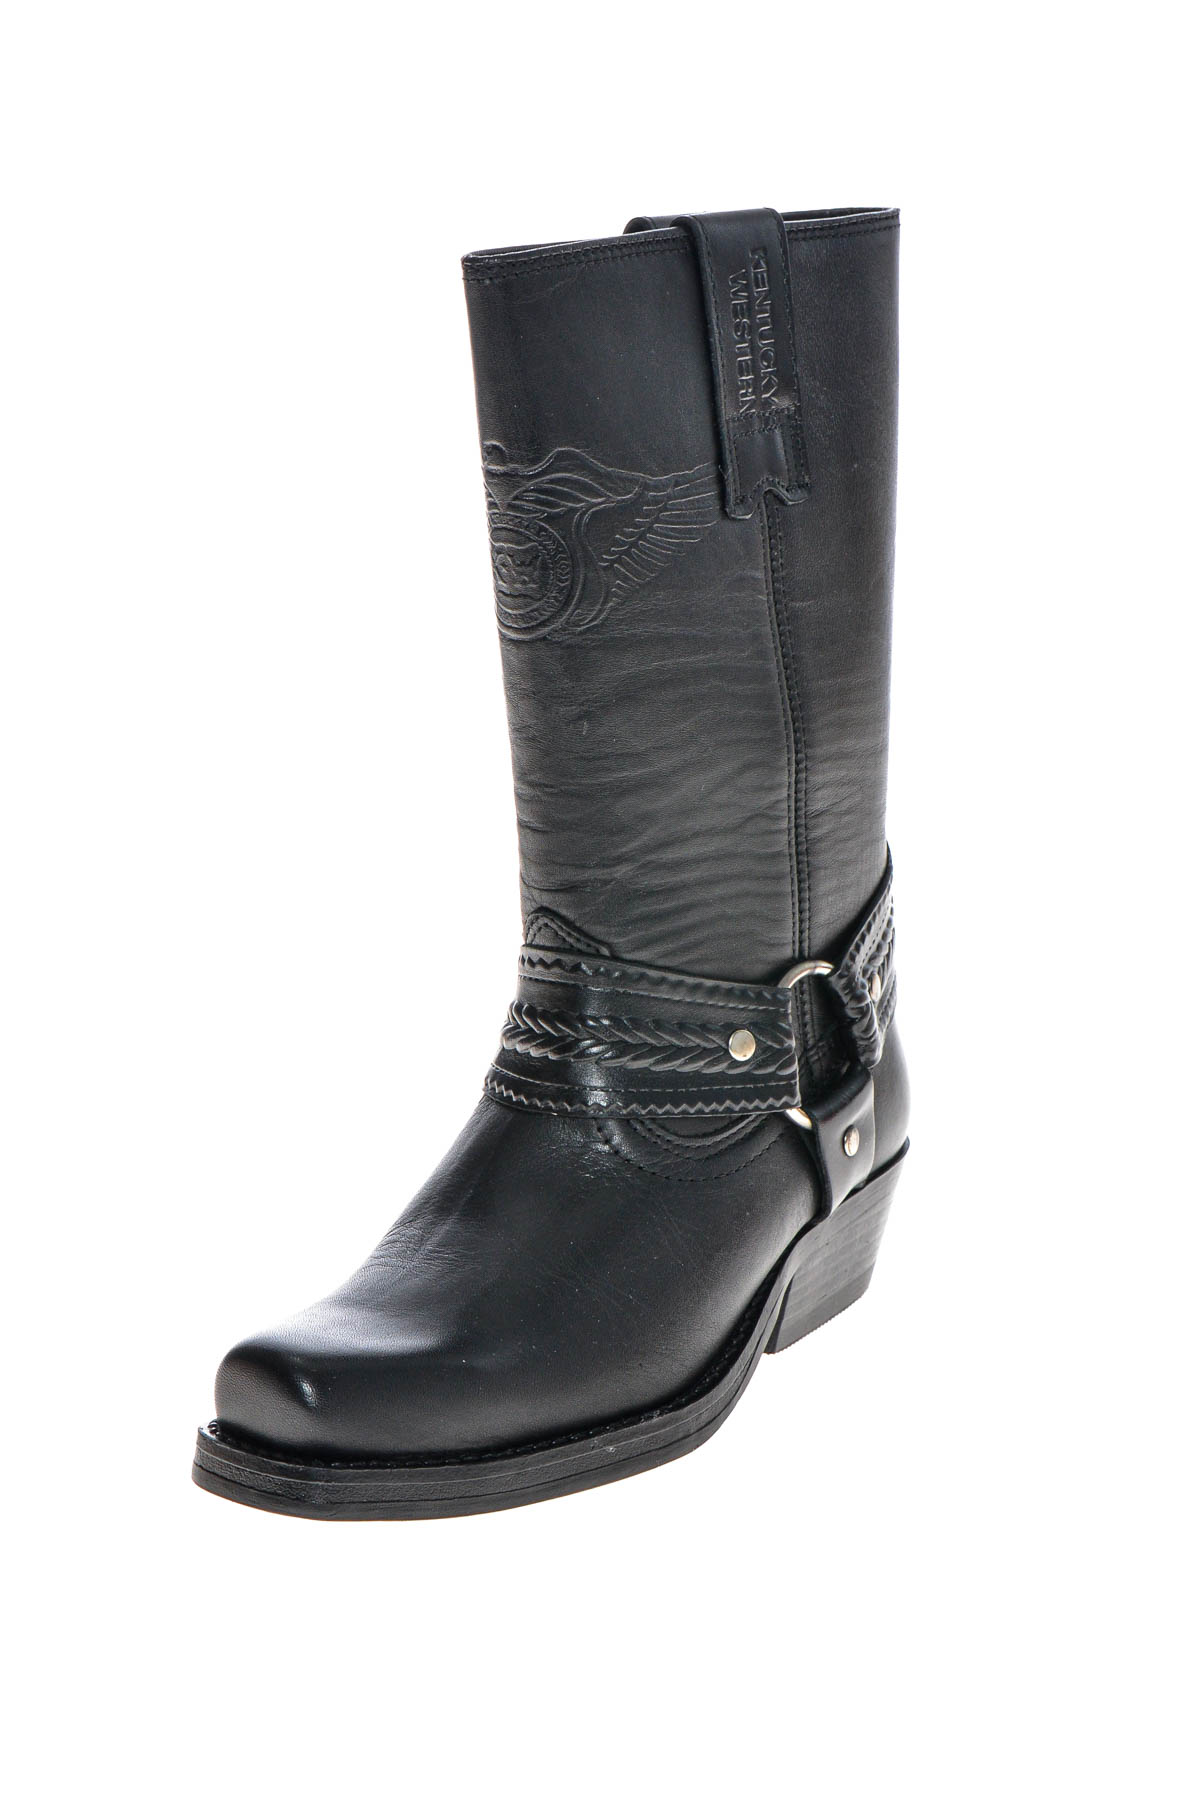 Women's boots - Kentucky's Western - 1